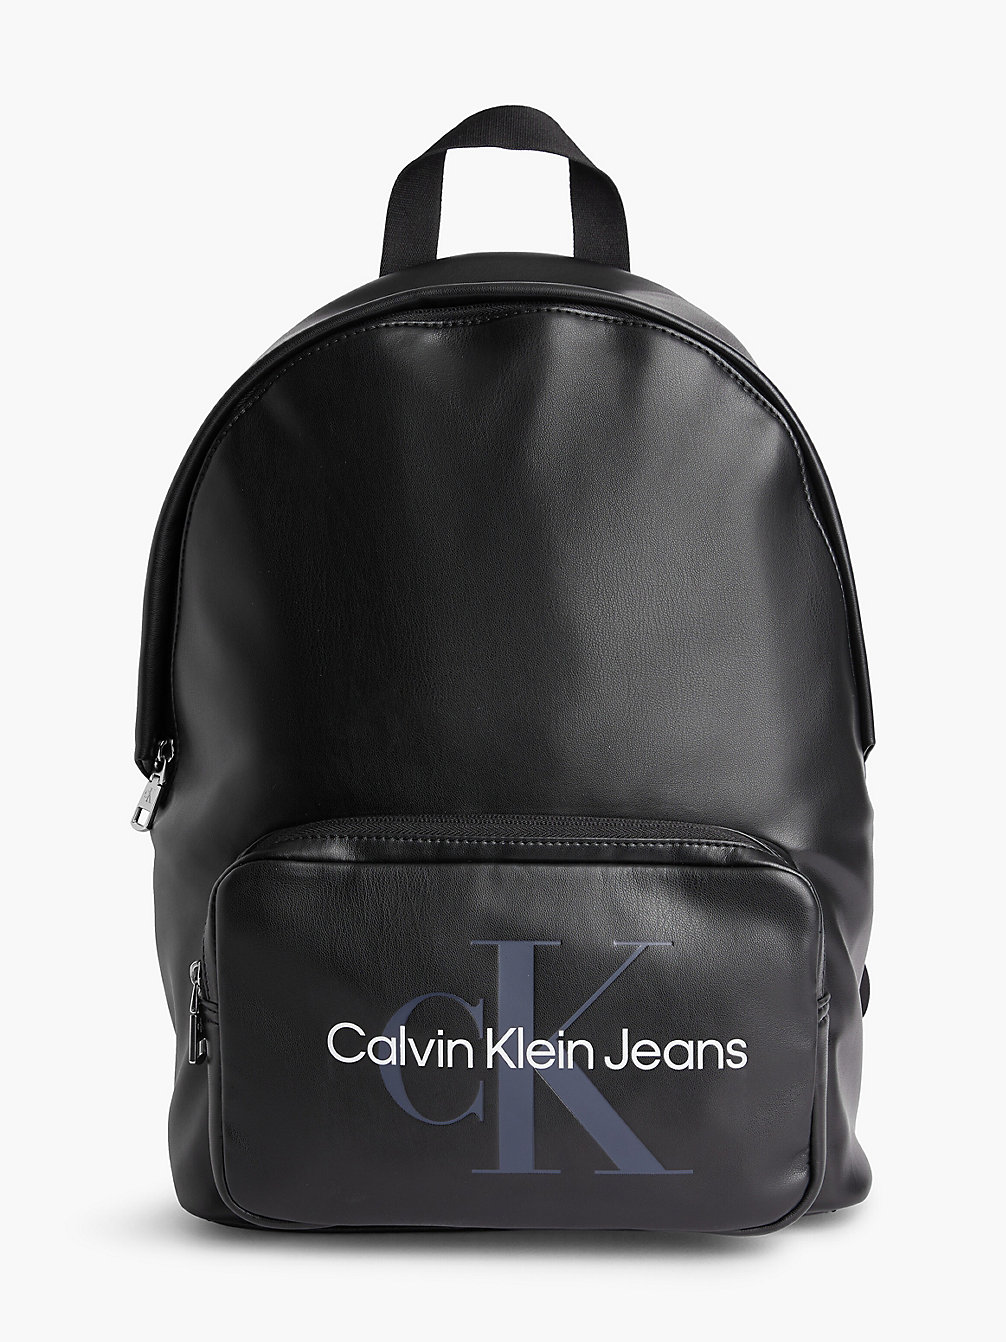 BLACK Round Backpack undefined men Calvin Klein